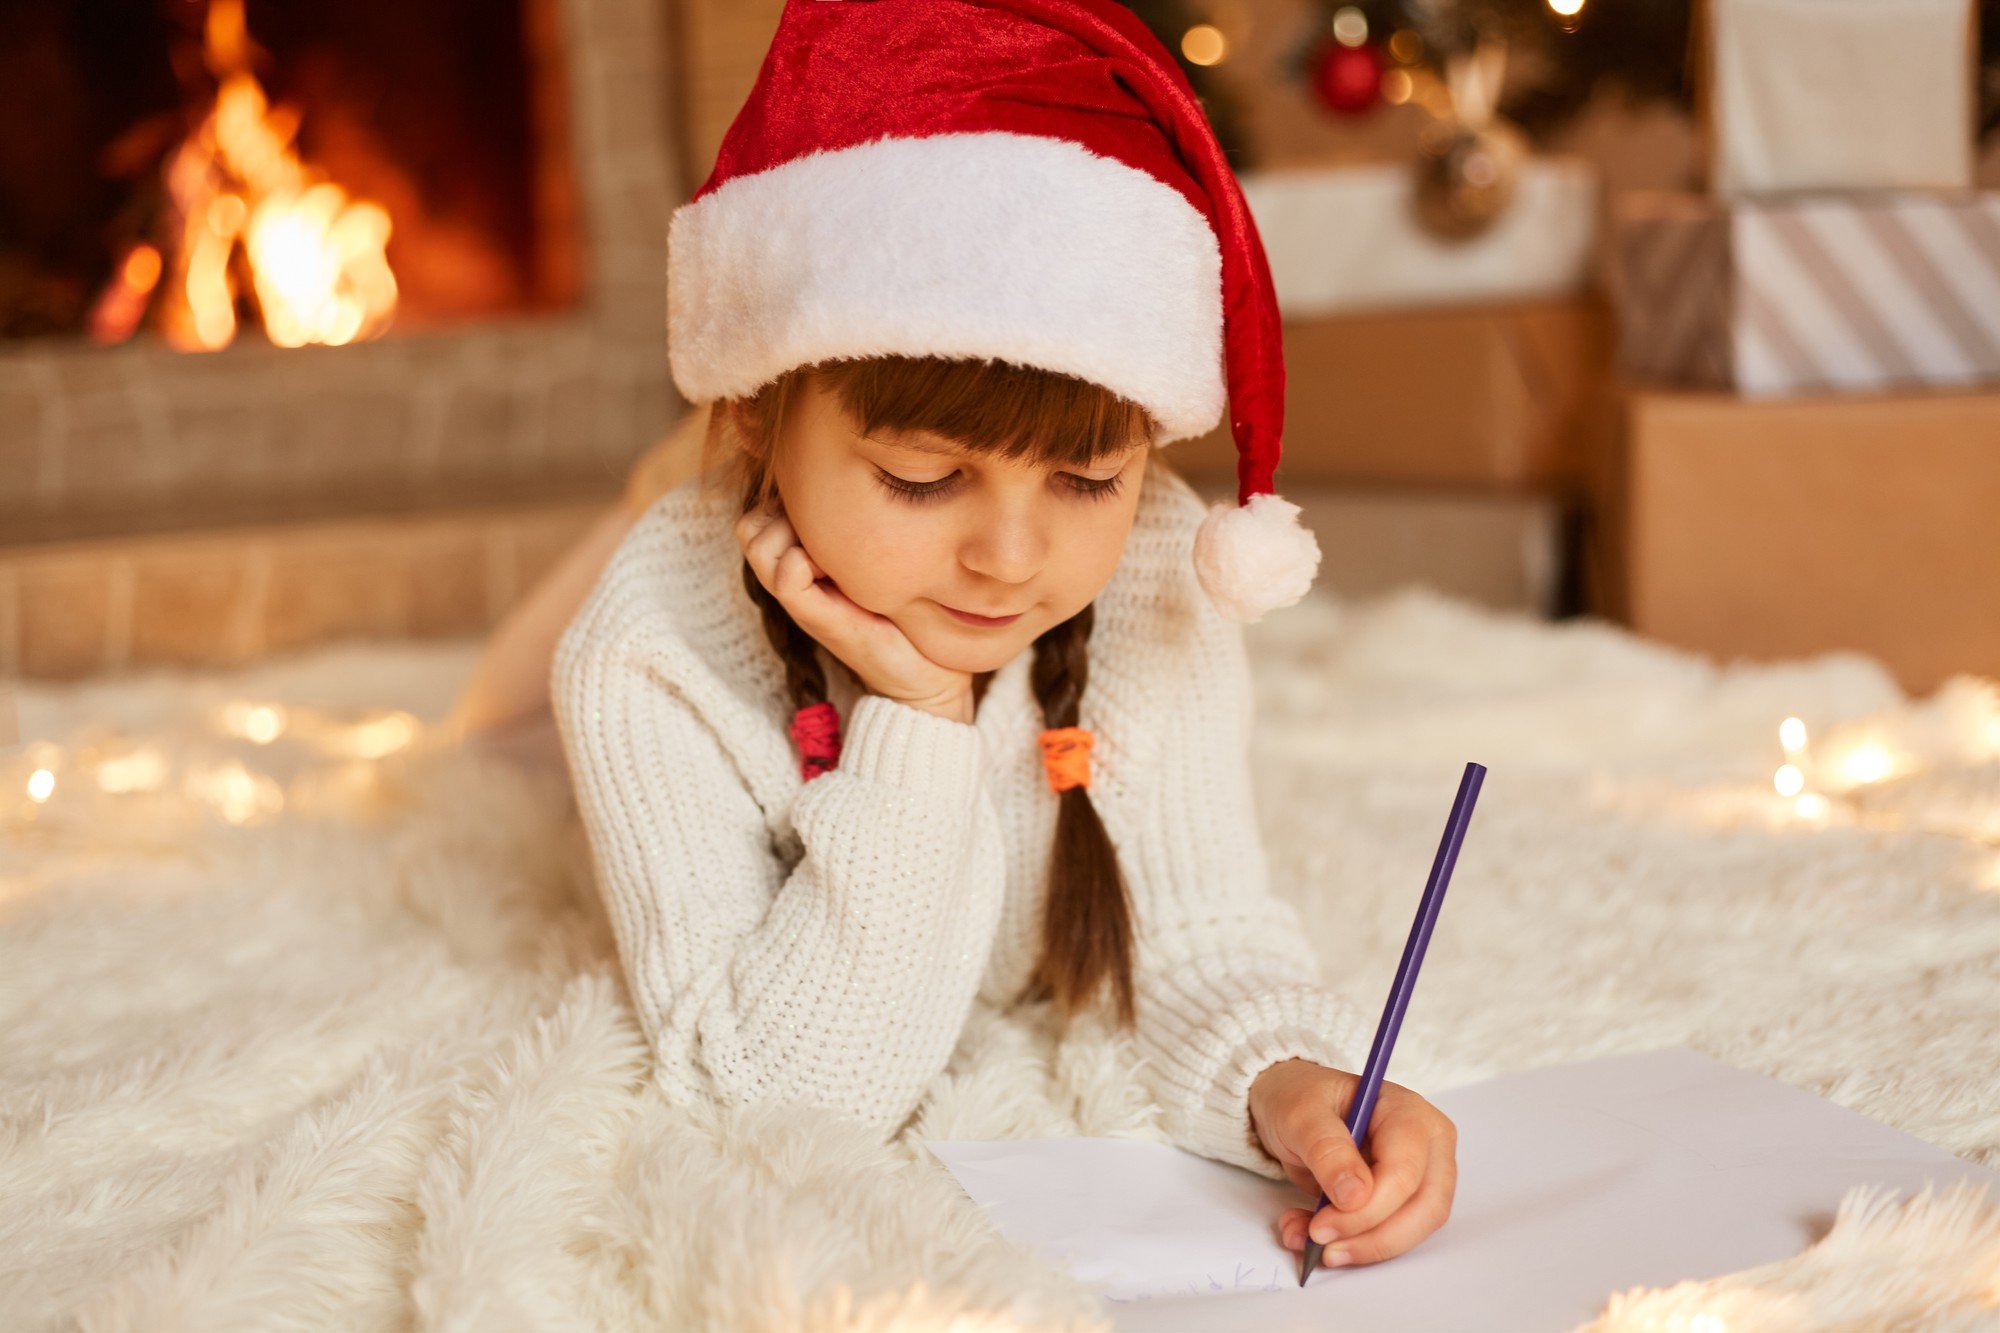 Vers de Nadal: 20 poemes curts per felicitar aquestes festes amb tendresa i originalitat